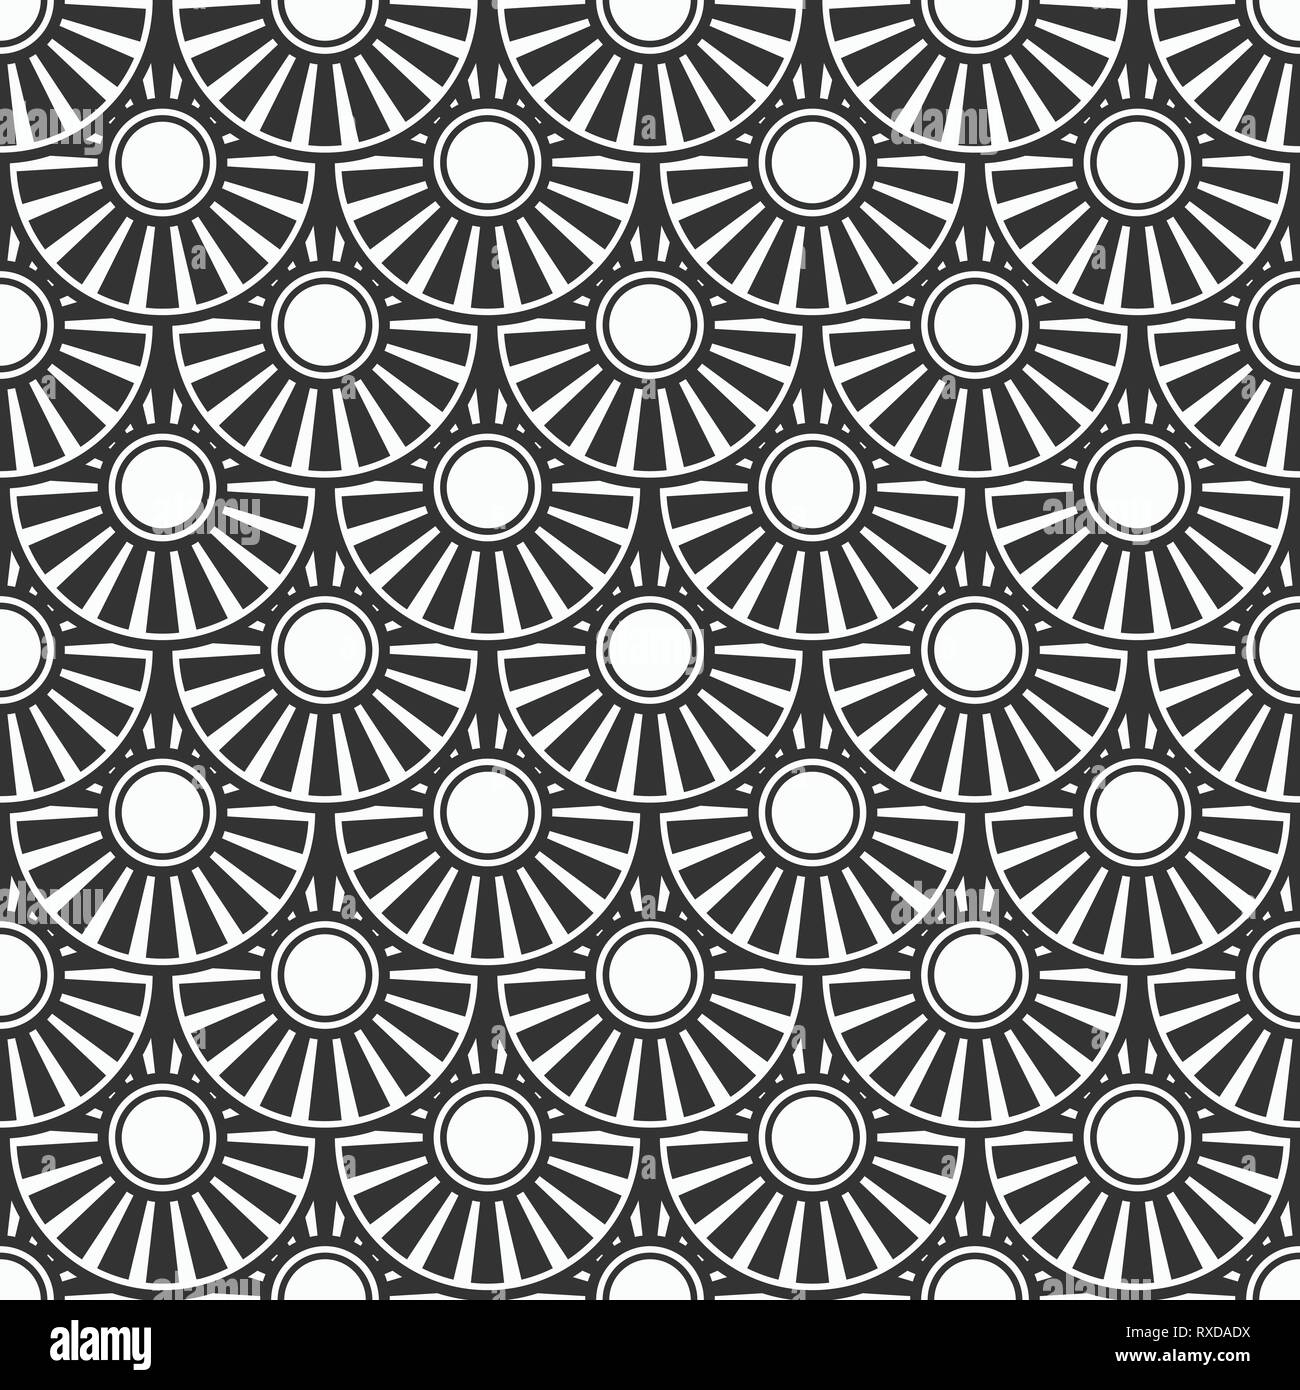 Zusammenfassung nahtlose Japanische geometrischen Muster von Kreisen in Abschnitte unterteilt. Fisch-Skalen Fliesen- Muster. Oriental Motif. Vector Hintergrund. Stock Vektor